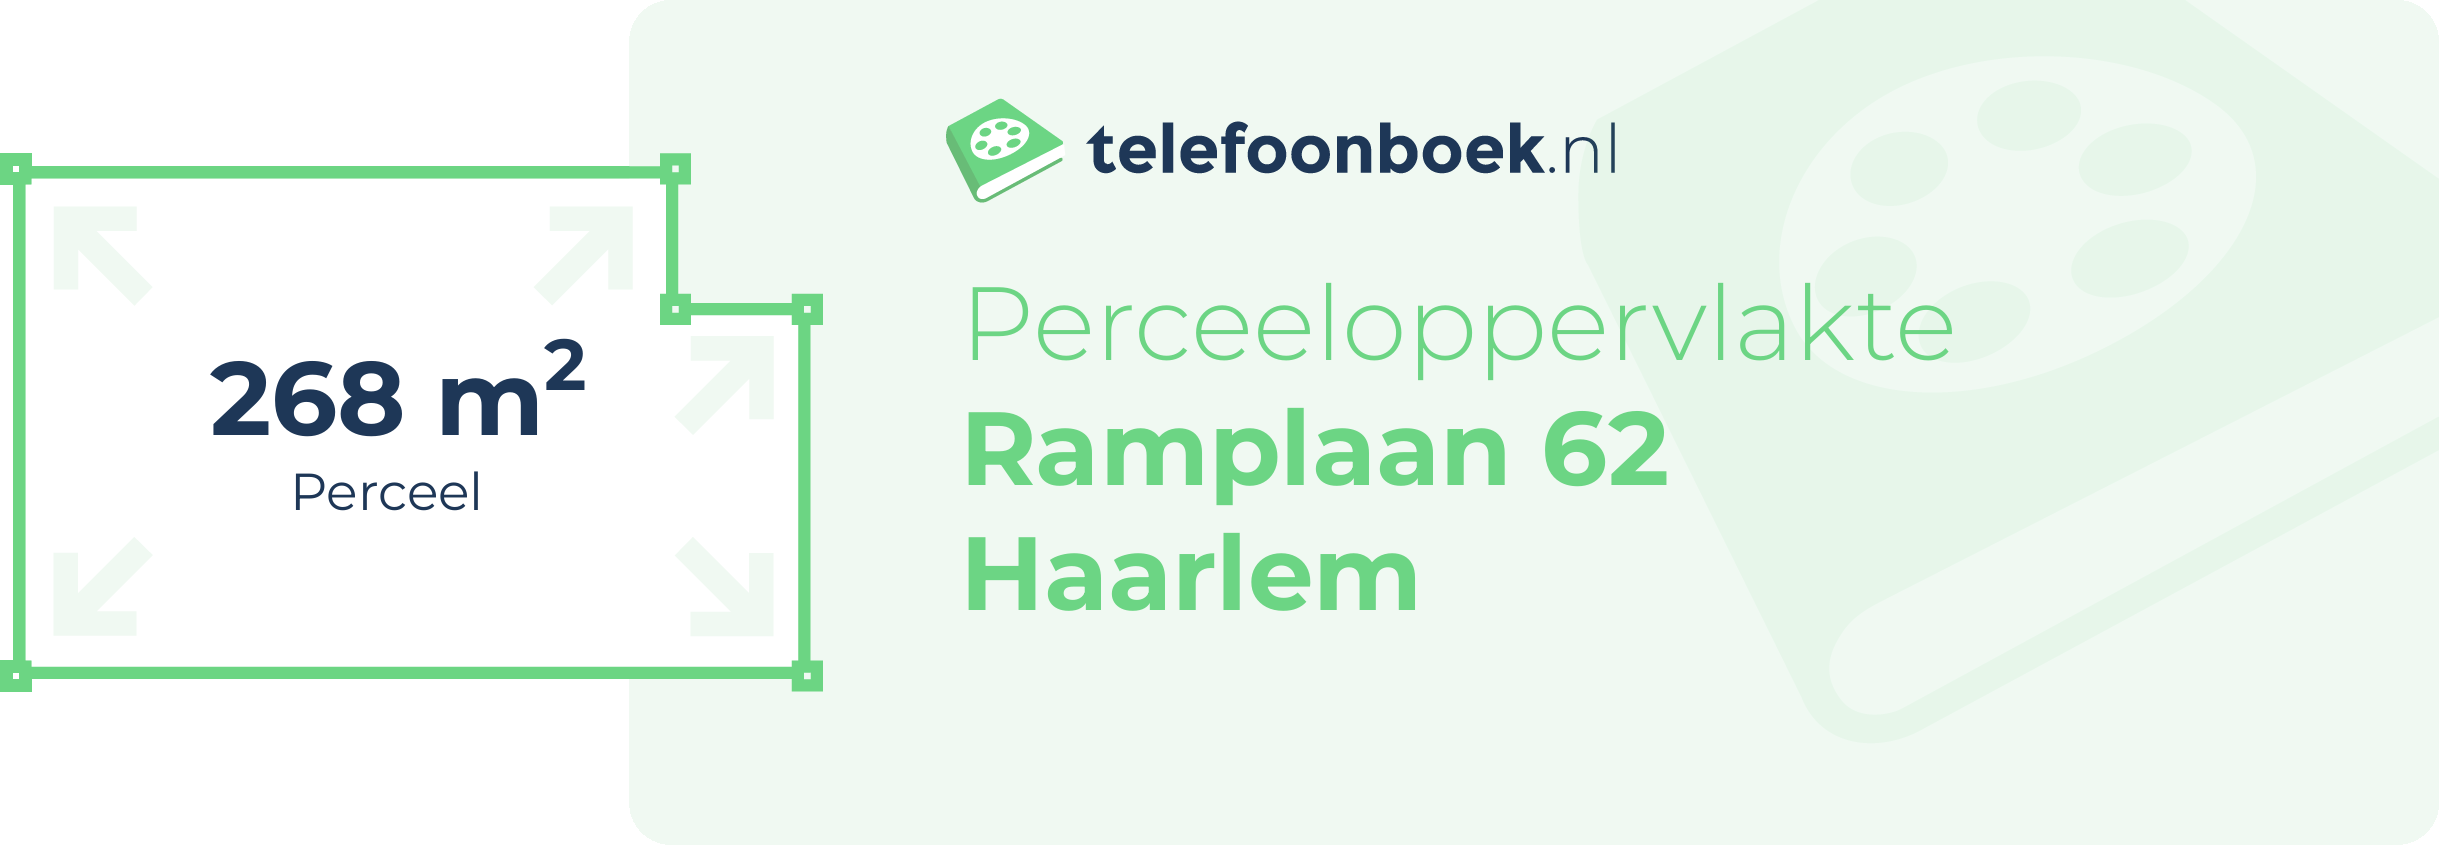 Perceeloppervlakte Ramplaan 62 Haarlem